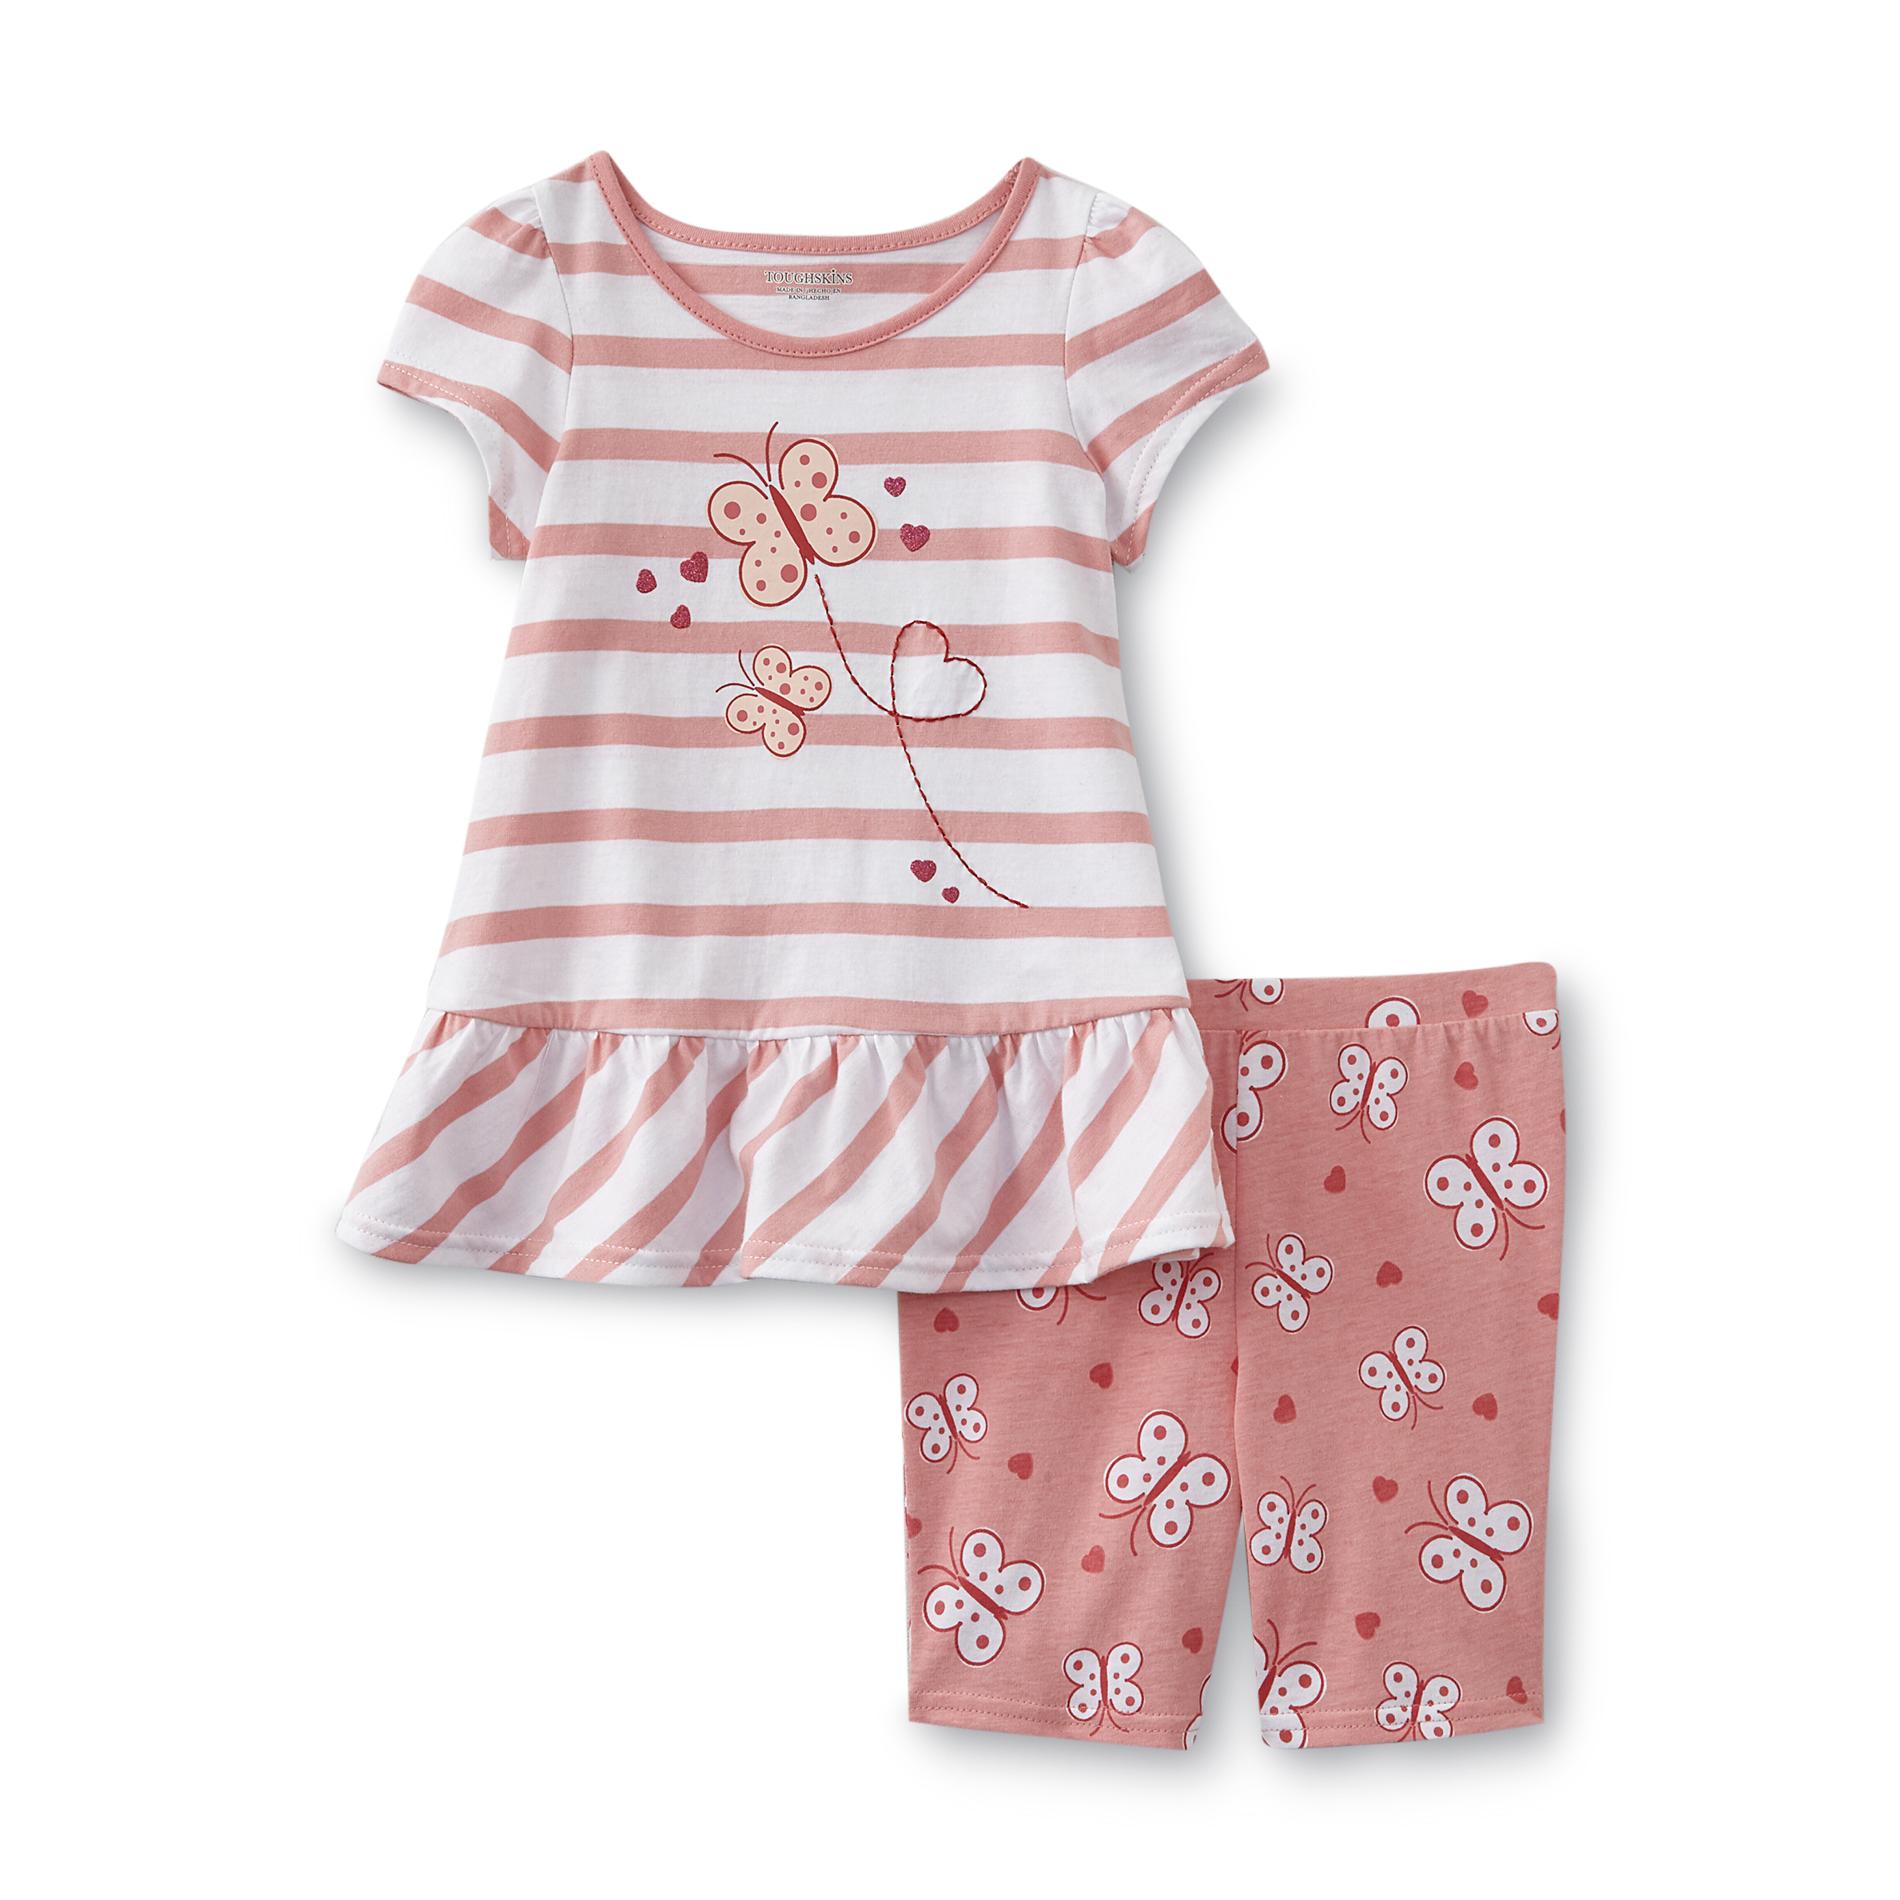 Toughskins Infant & Toddler Girl's Top & Shorts - Butterflies